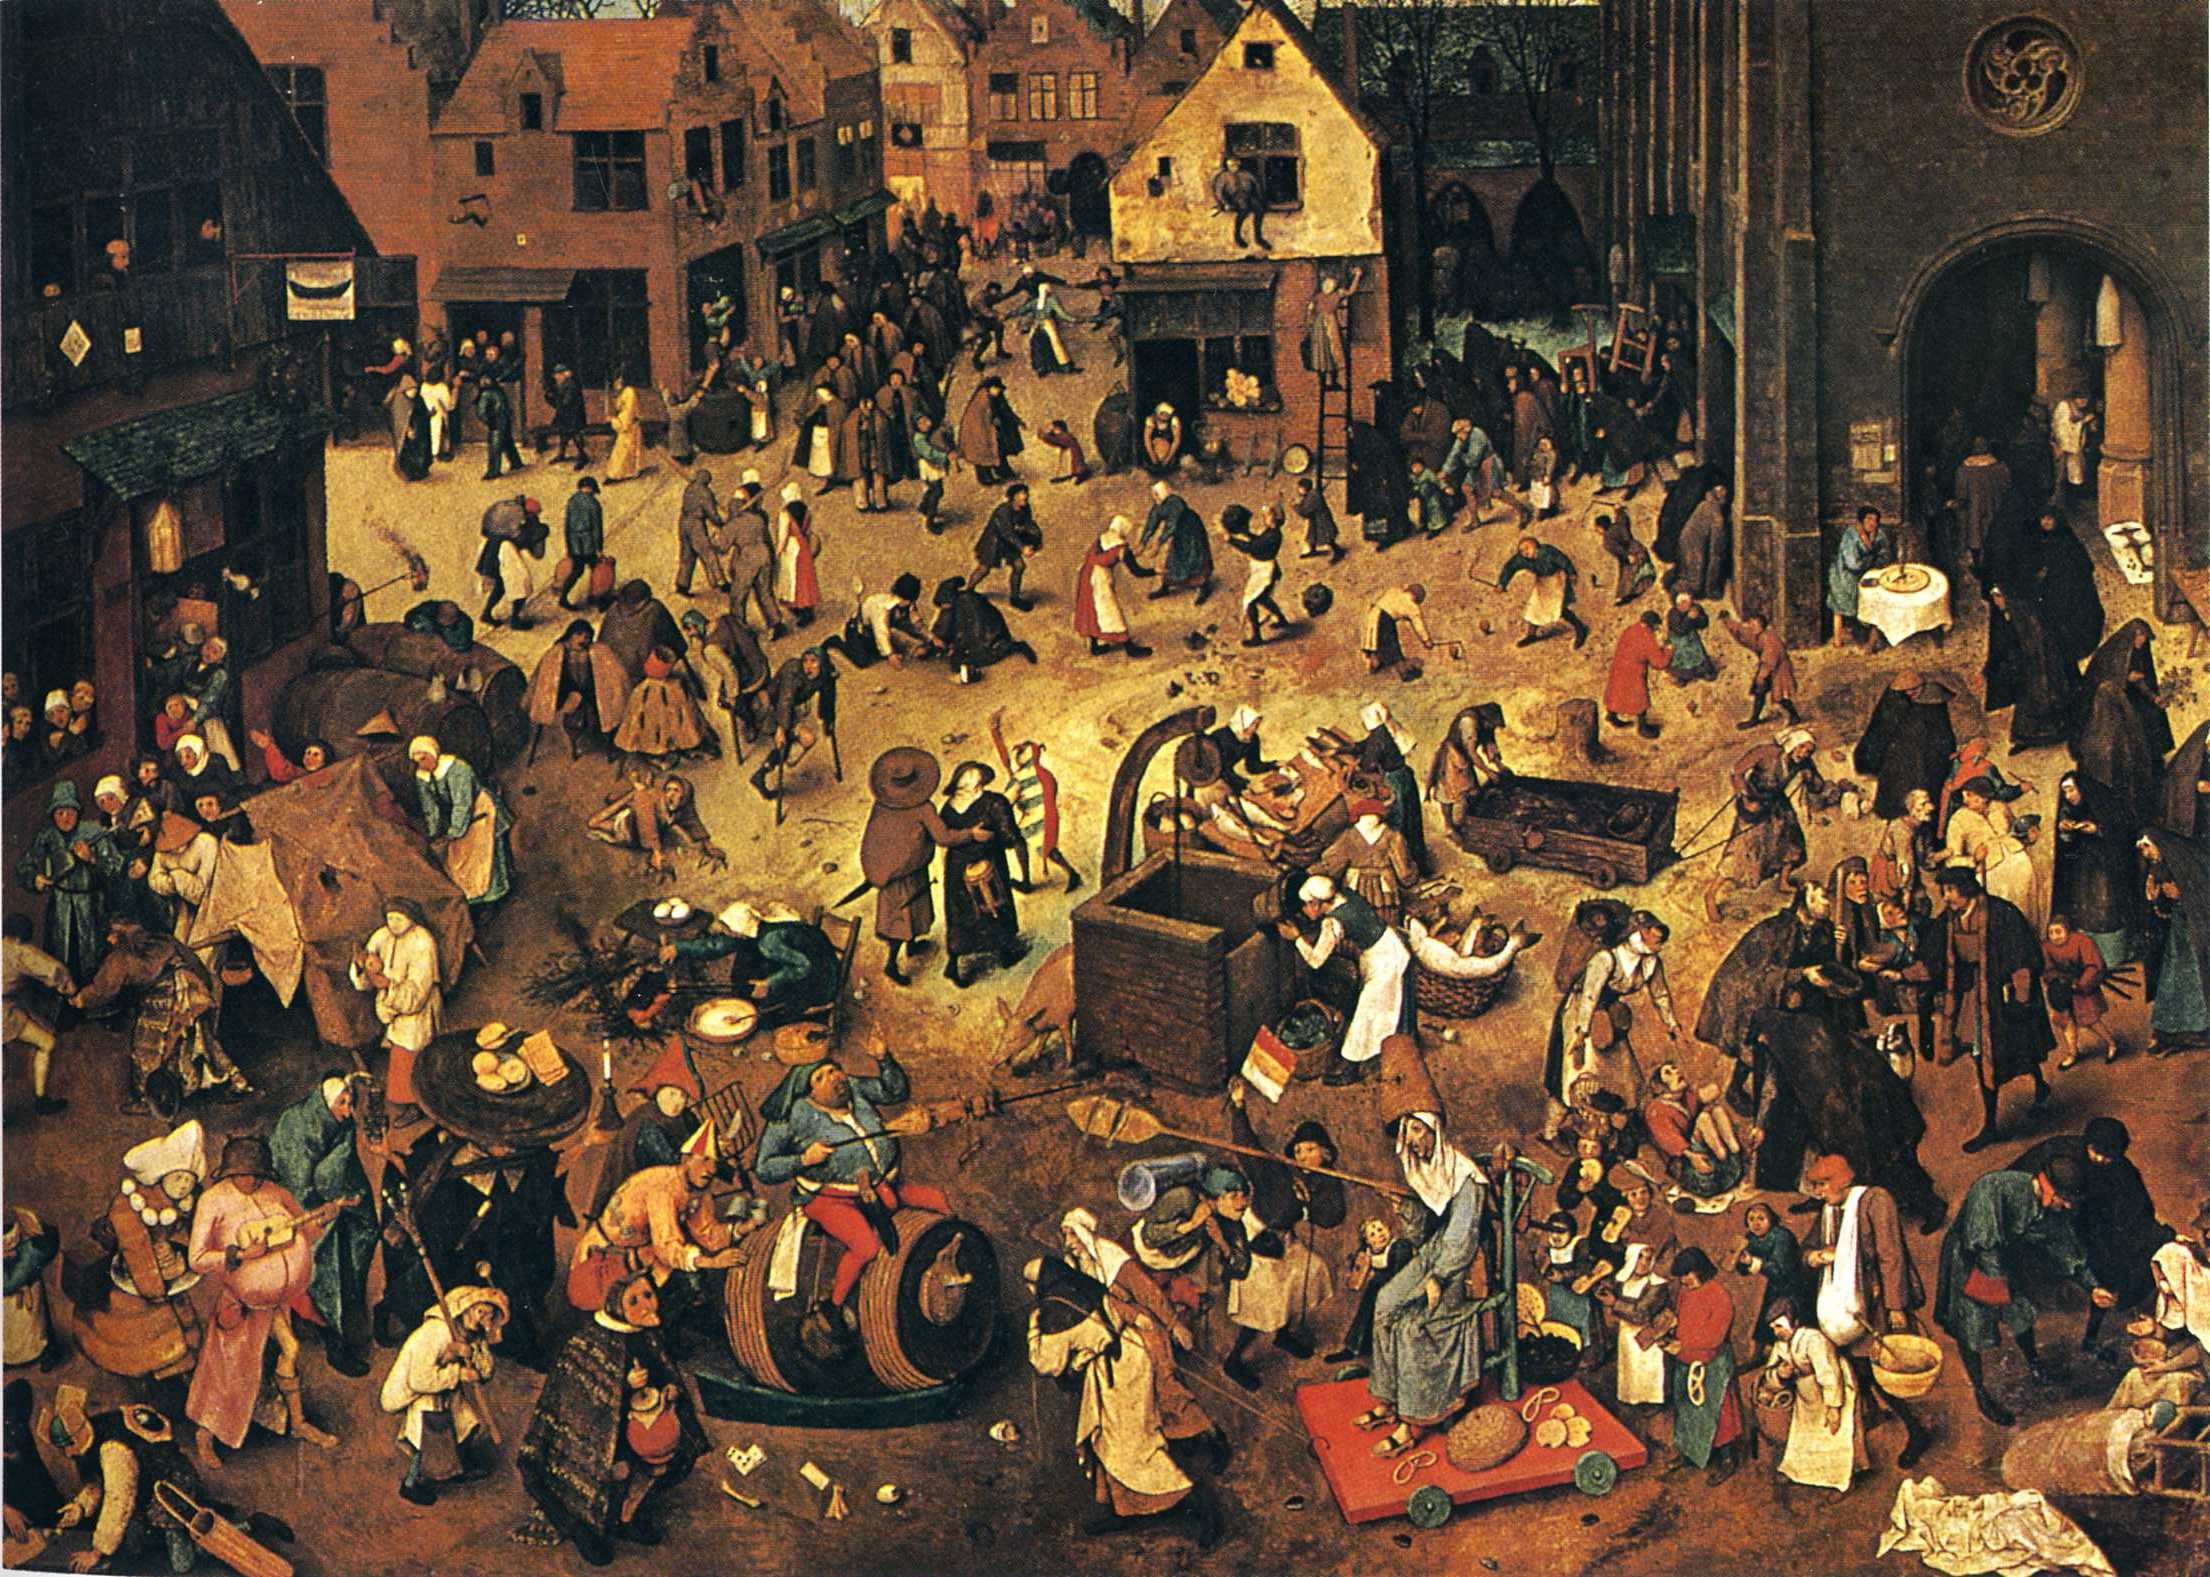 De strijd tussen carnaval en vasten by Pieter Bruegel de Oude - 1559 - 118 x 164.5 cm Kunsthistorisches Museum